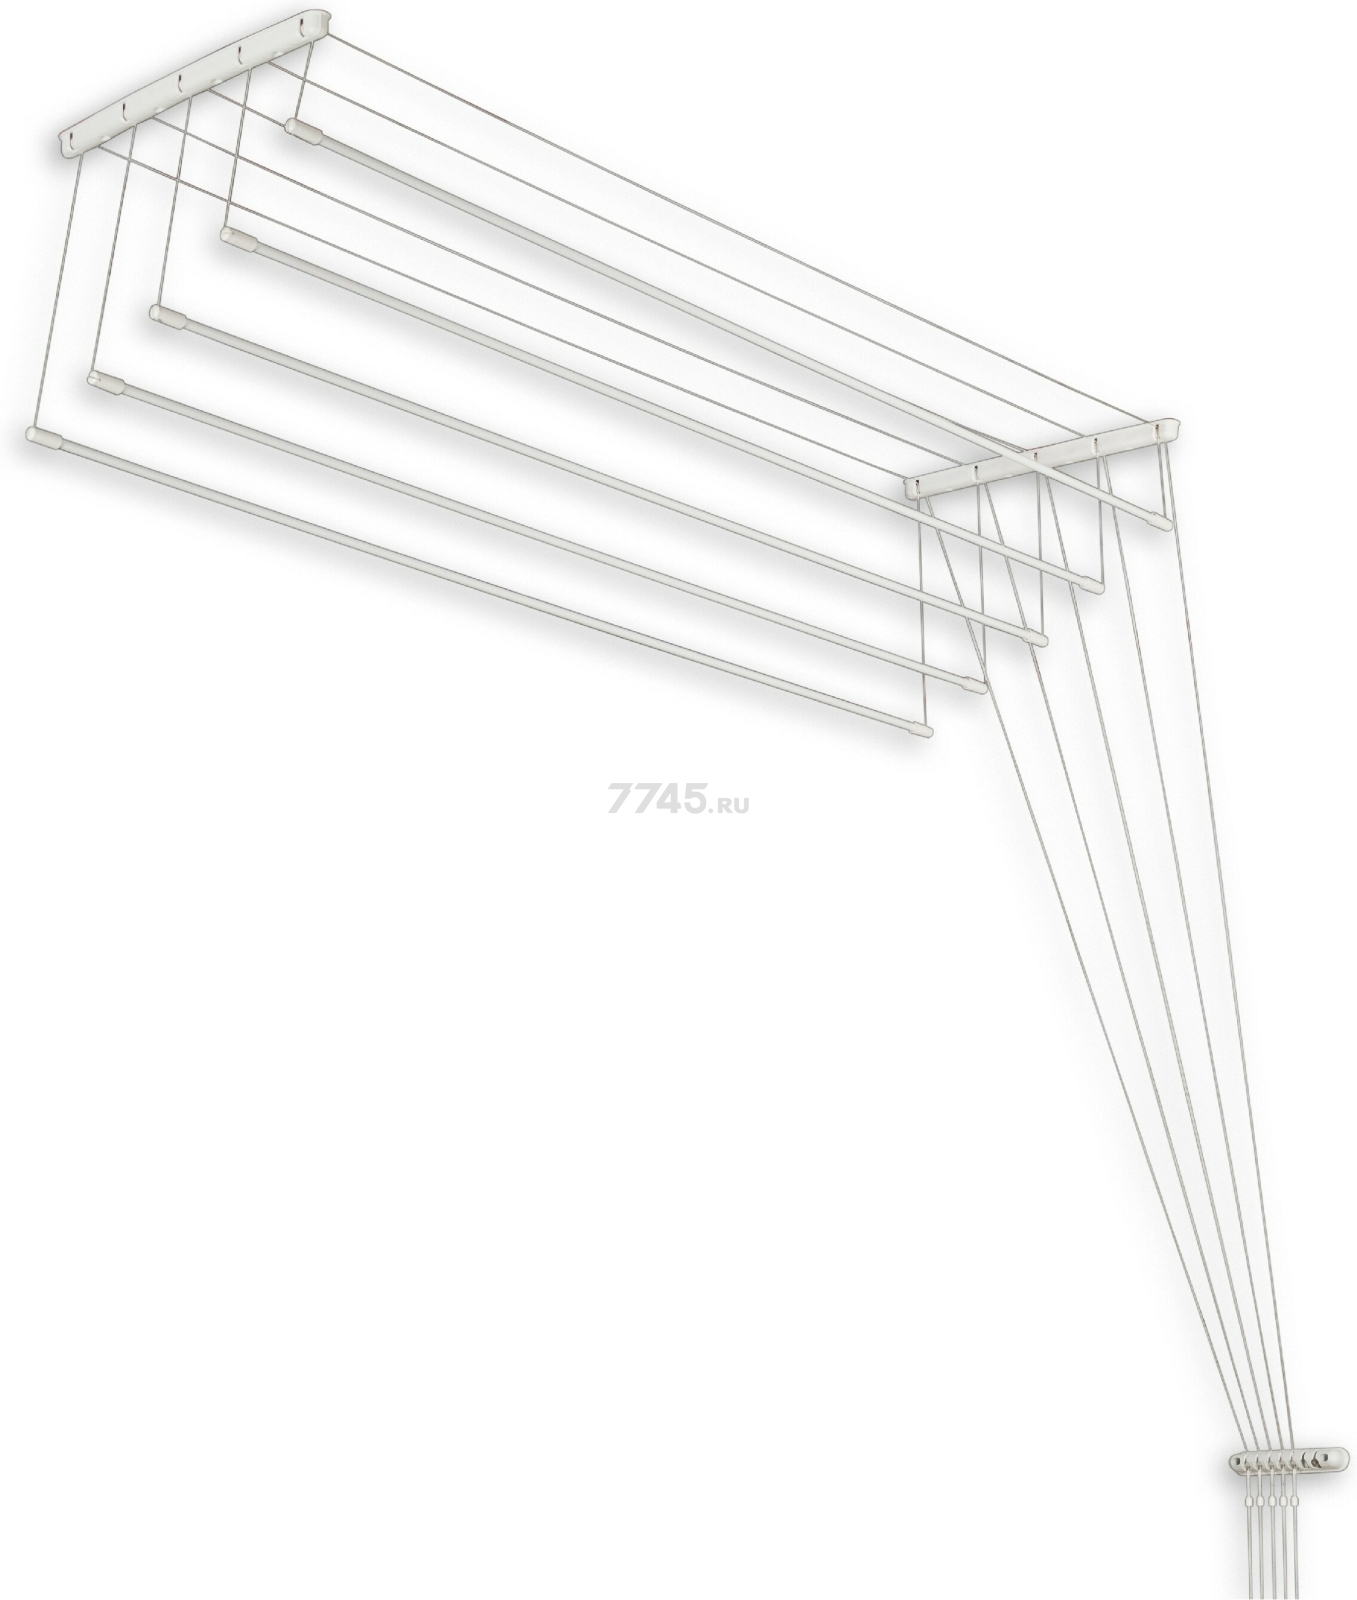 Сушилка для белья потолочная PERFECTO LINEA 1,7 м белая (36-001171)